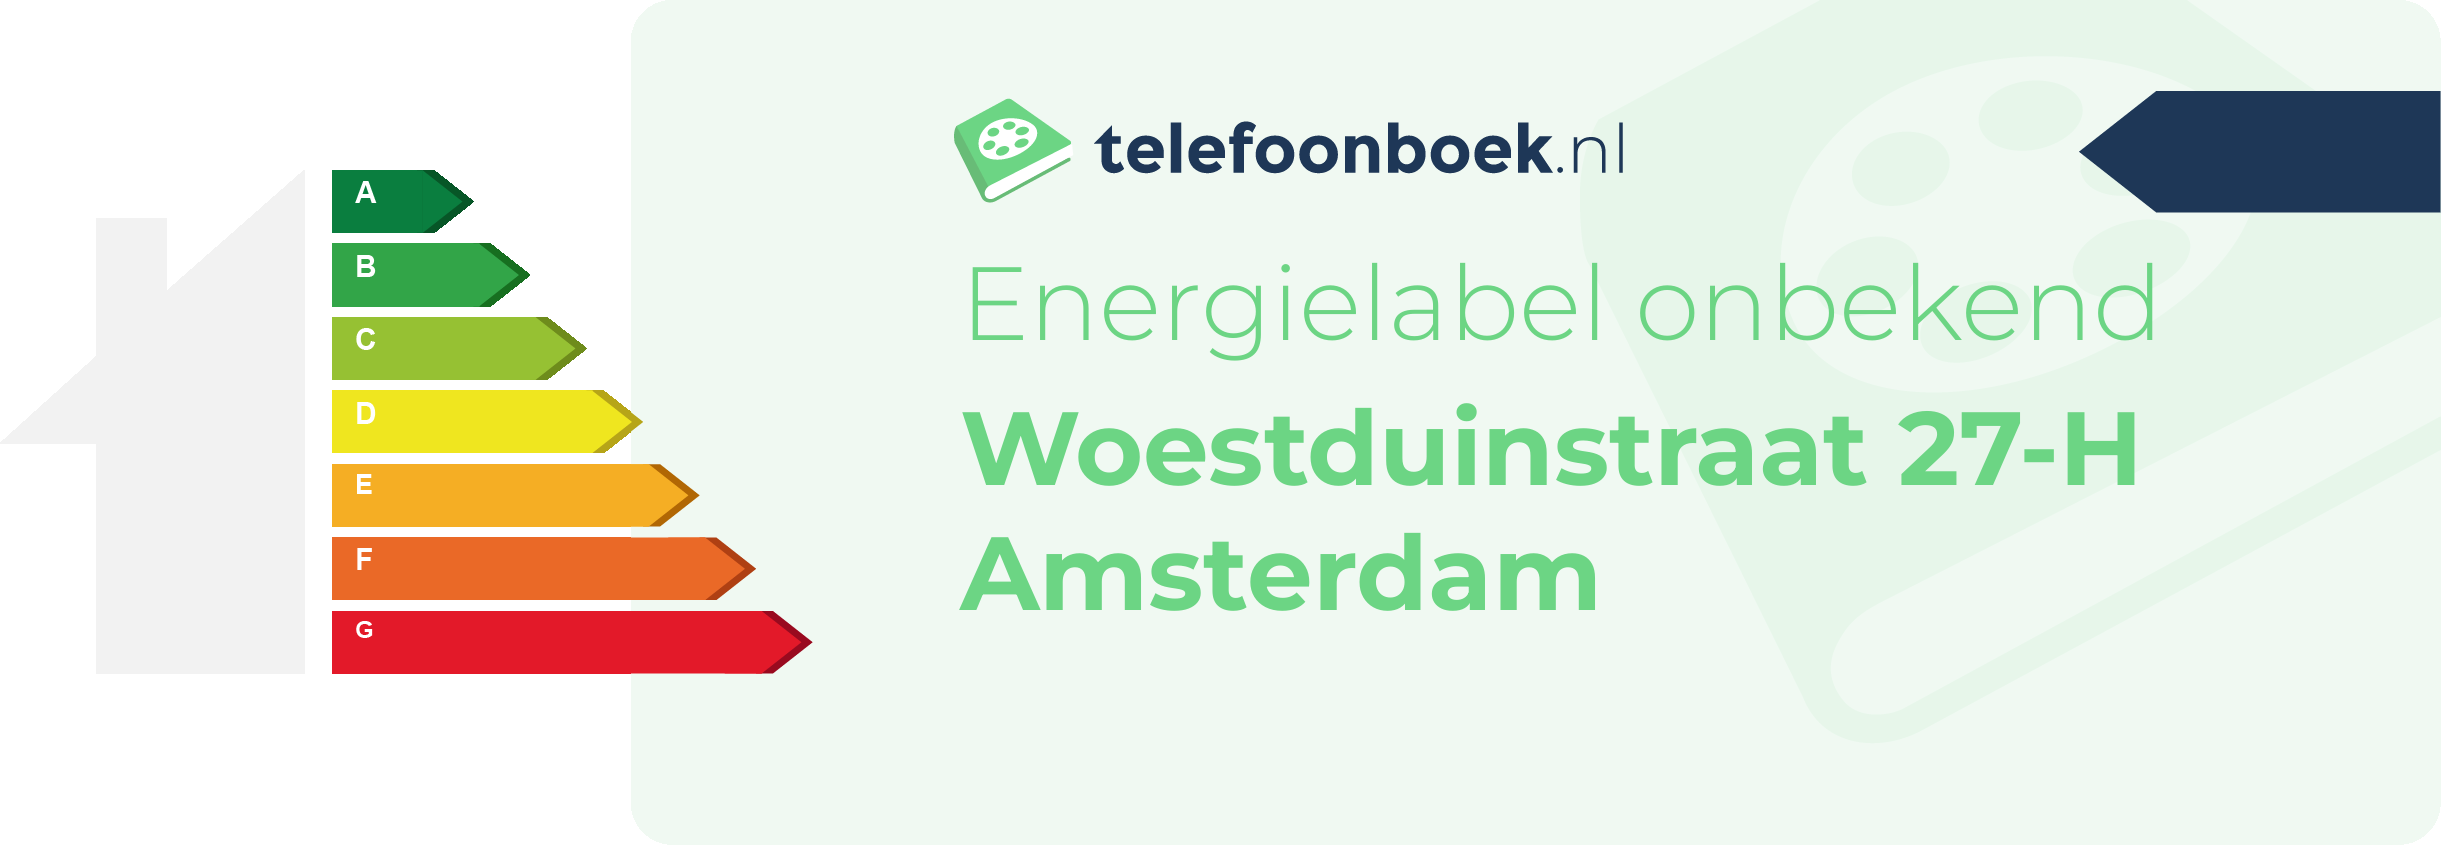 Energielabel Woestduinstraat 27-H Amsterdam